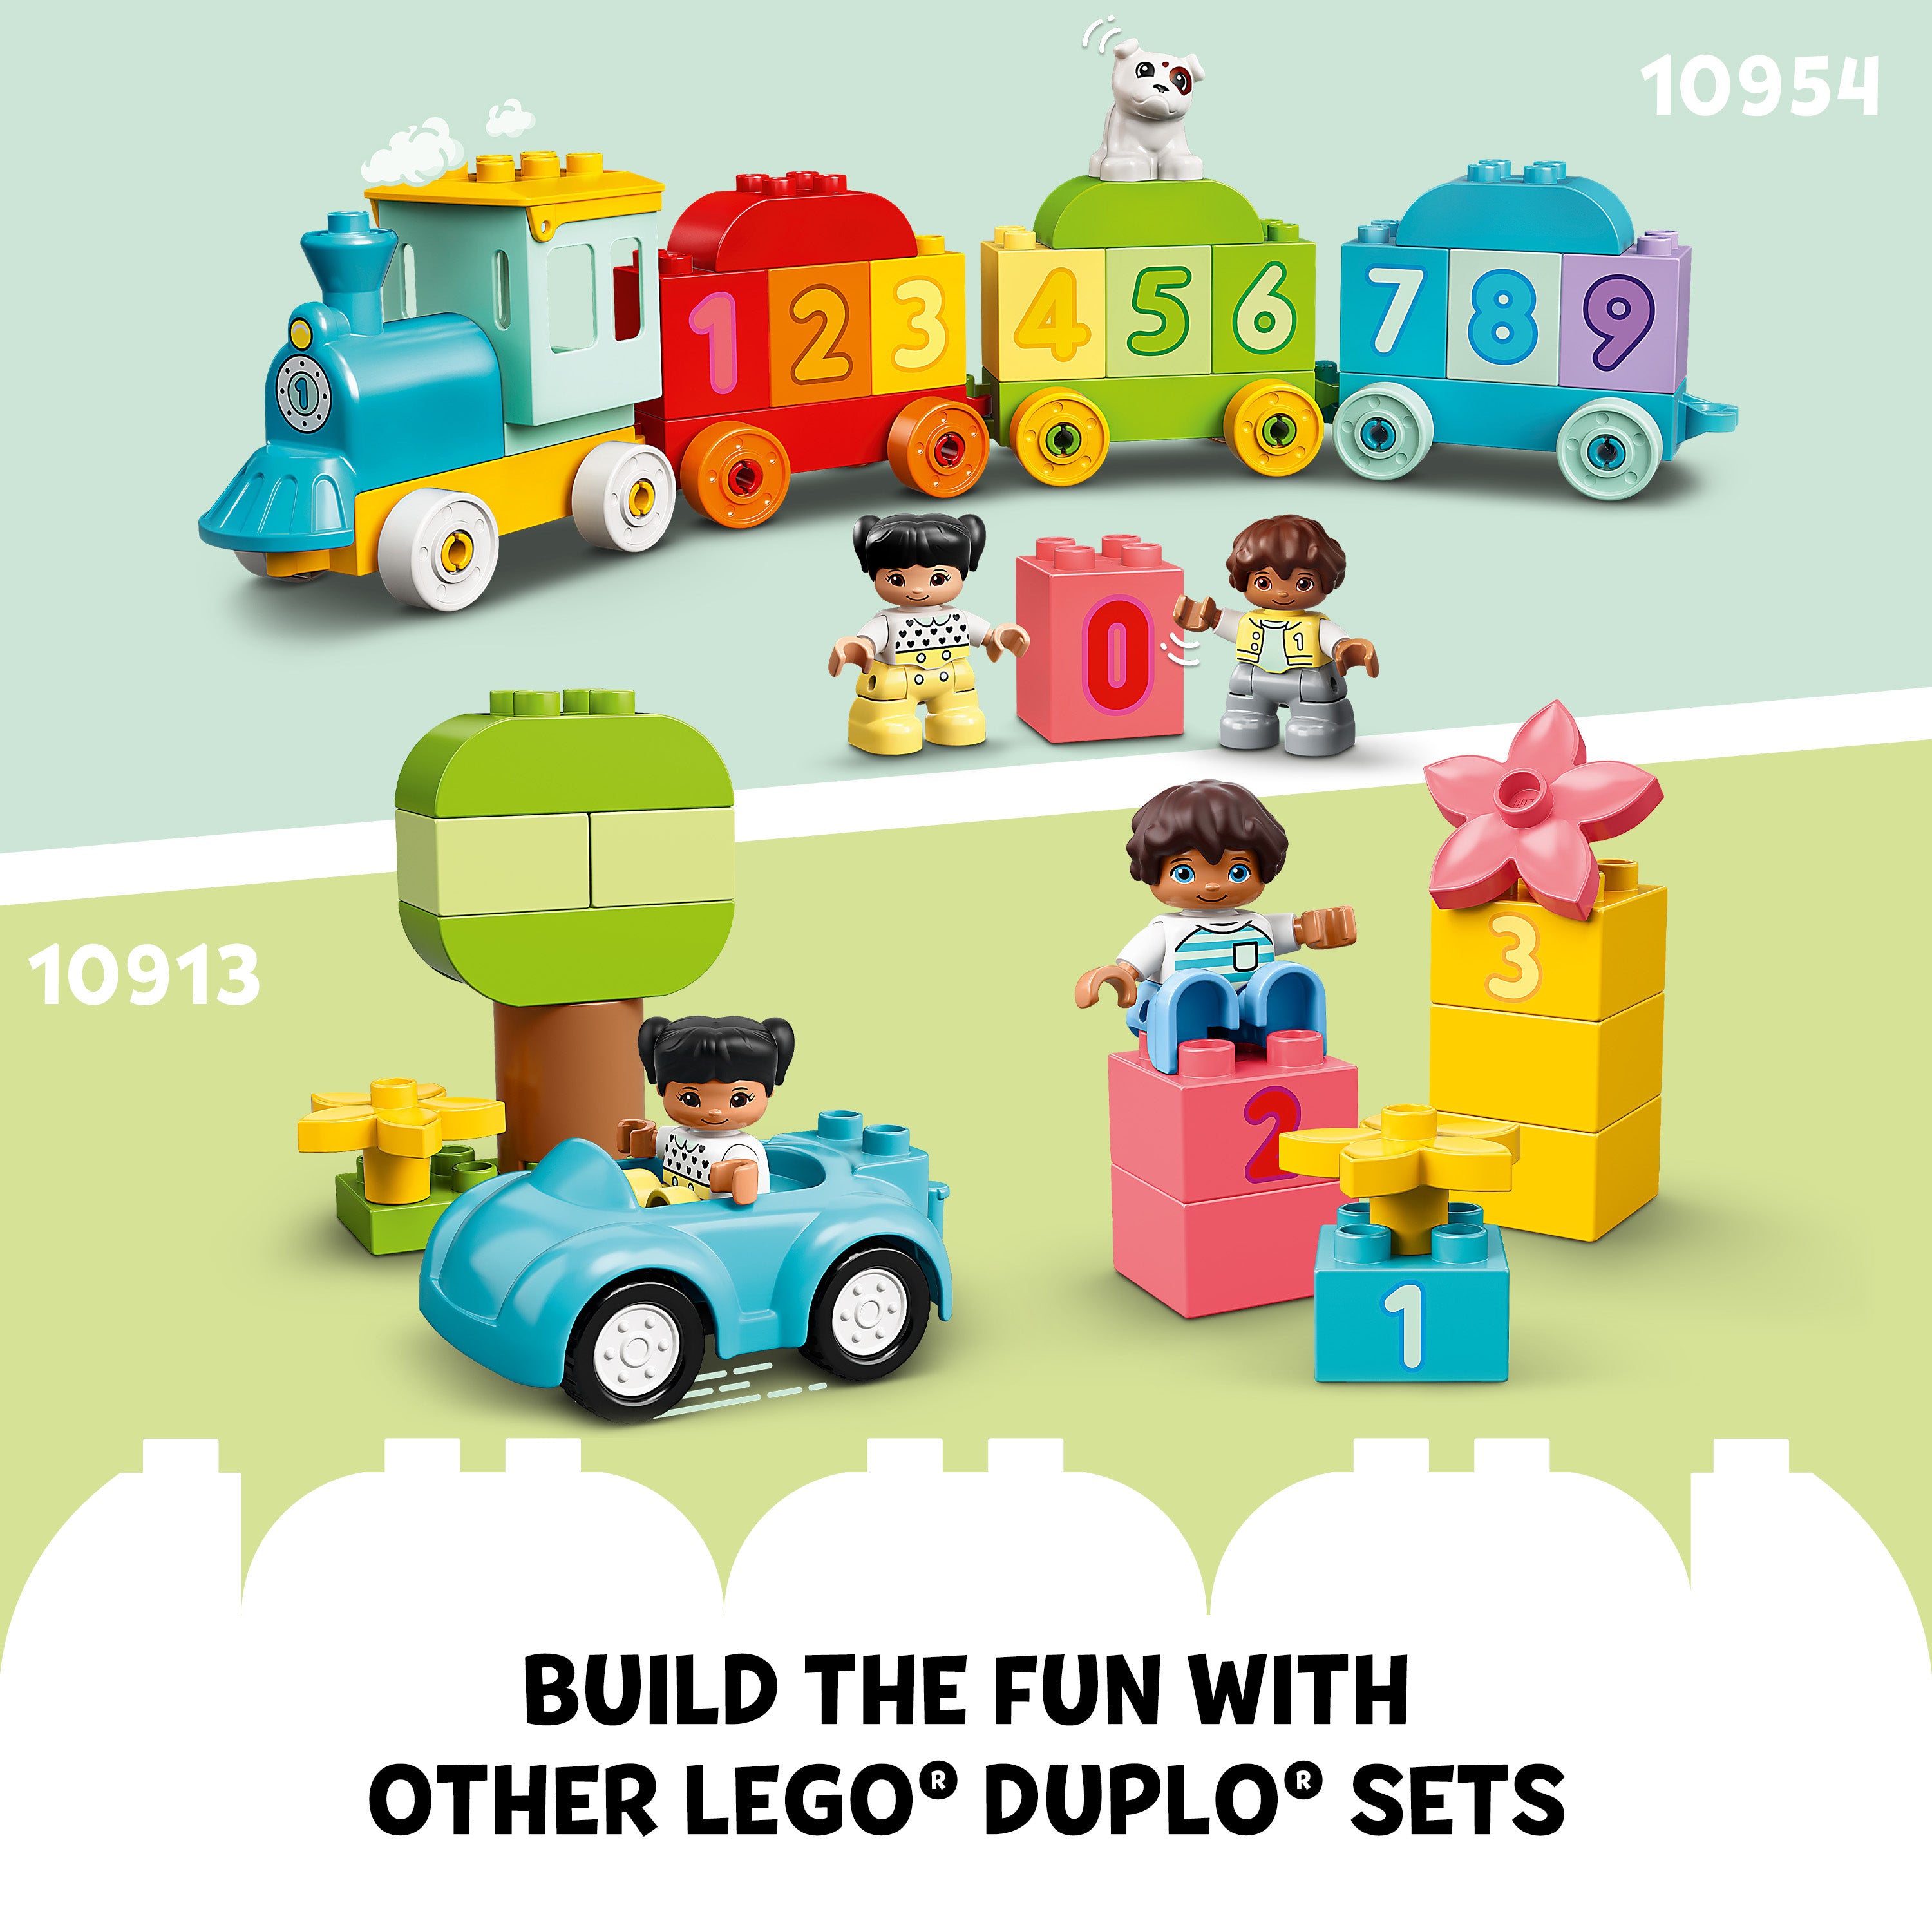 Lego 10421 Alphabet Truck